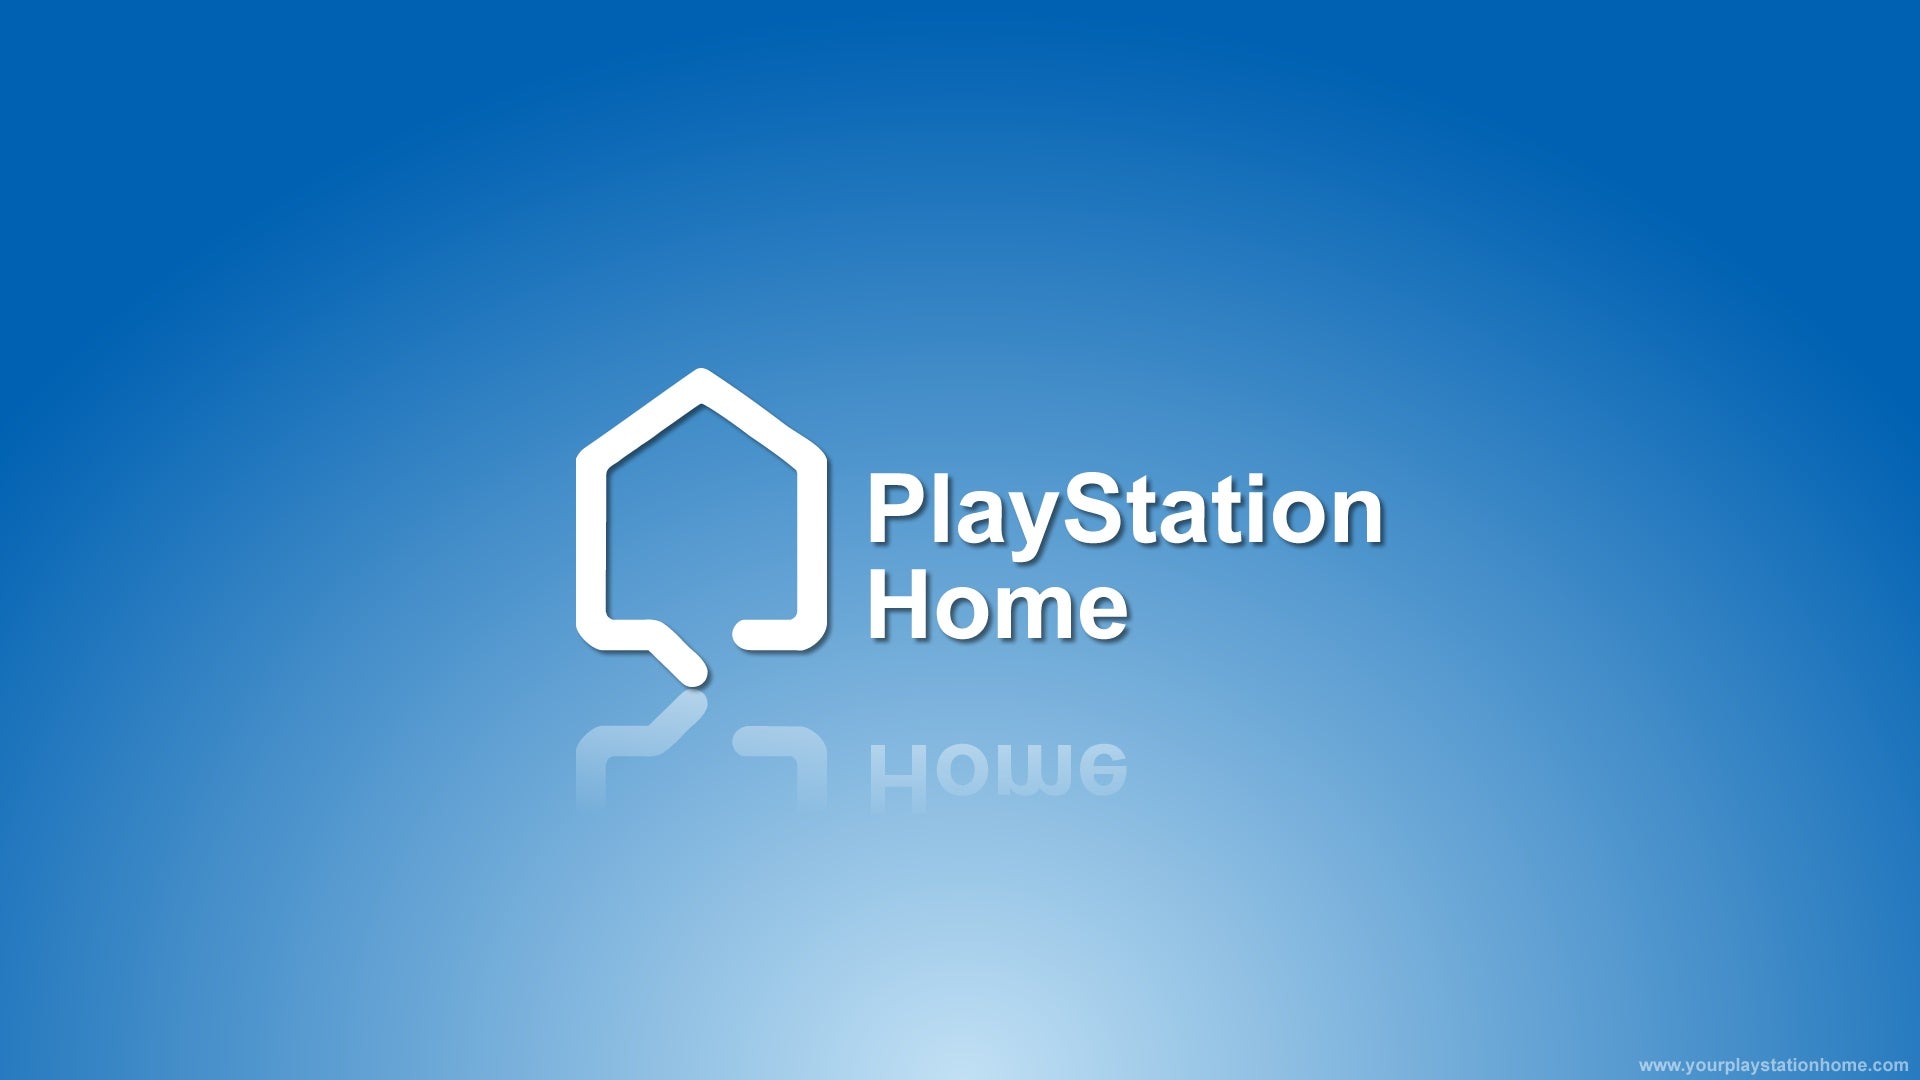 Obrazki dla PlayStation Home zostanie wyłączone w marcu 2015 roku